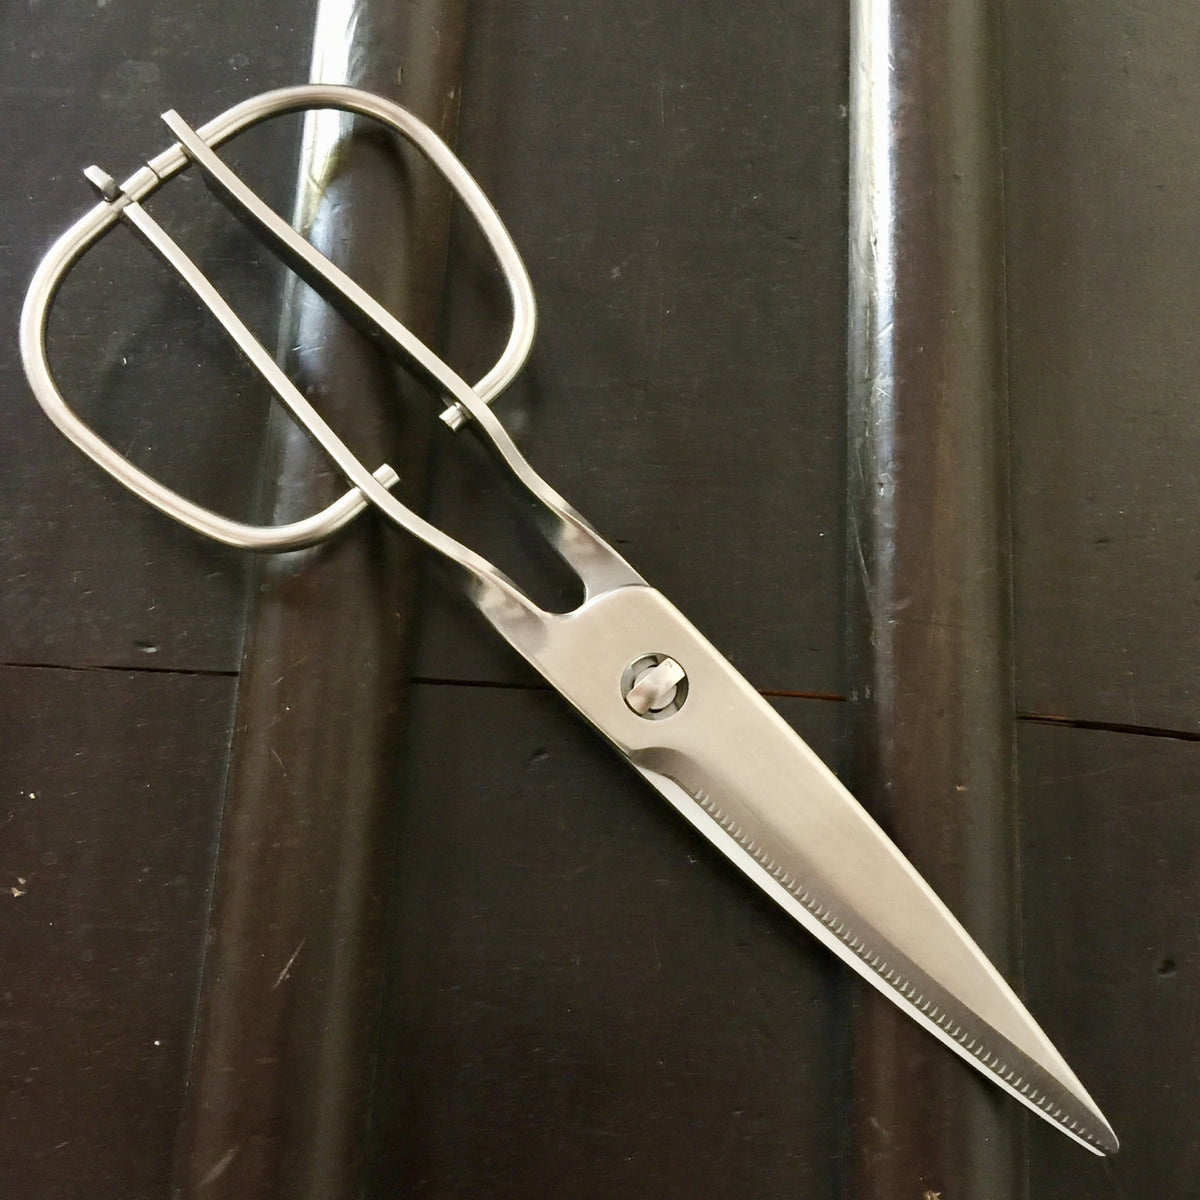 Toribe Kitchen Scissors